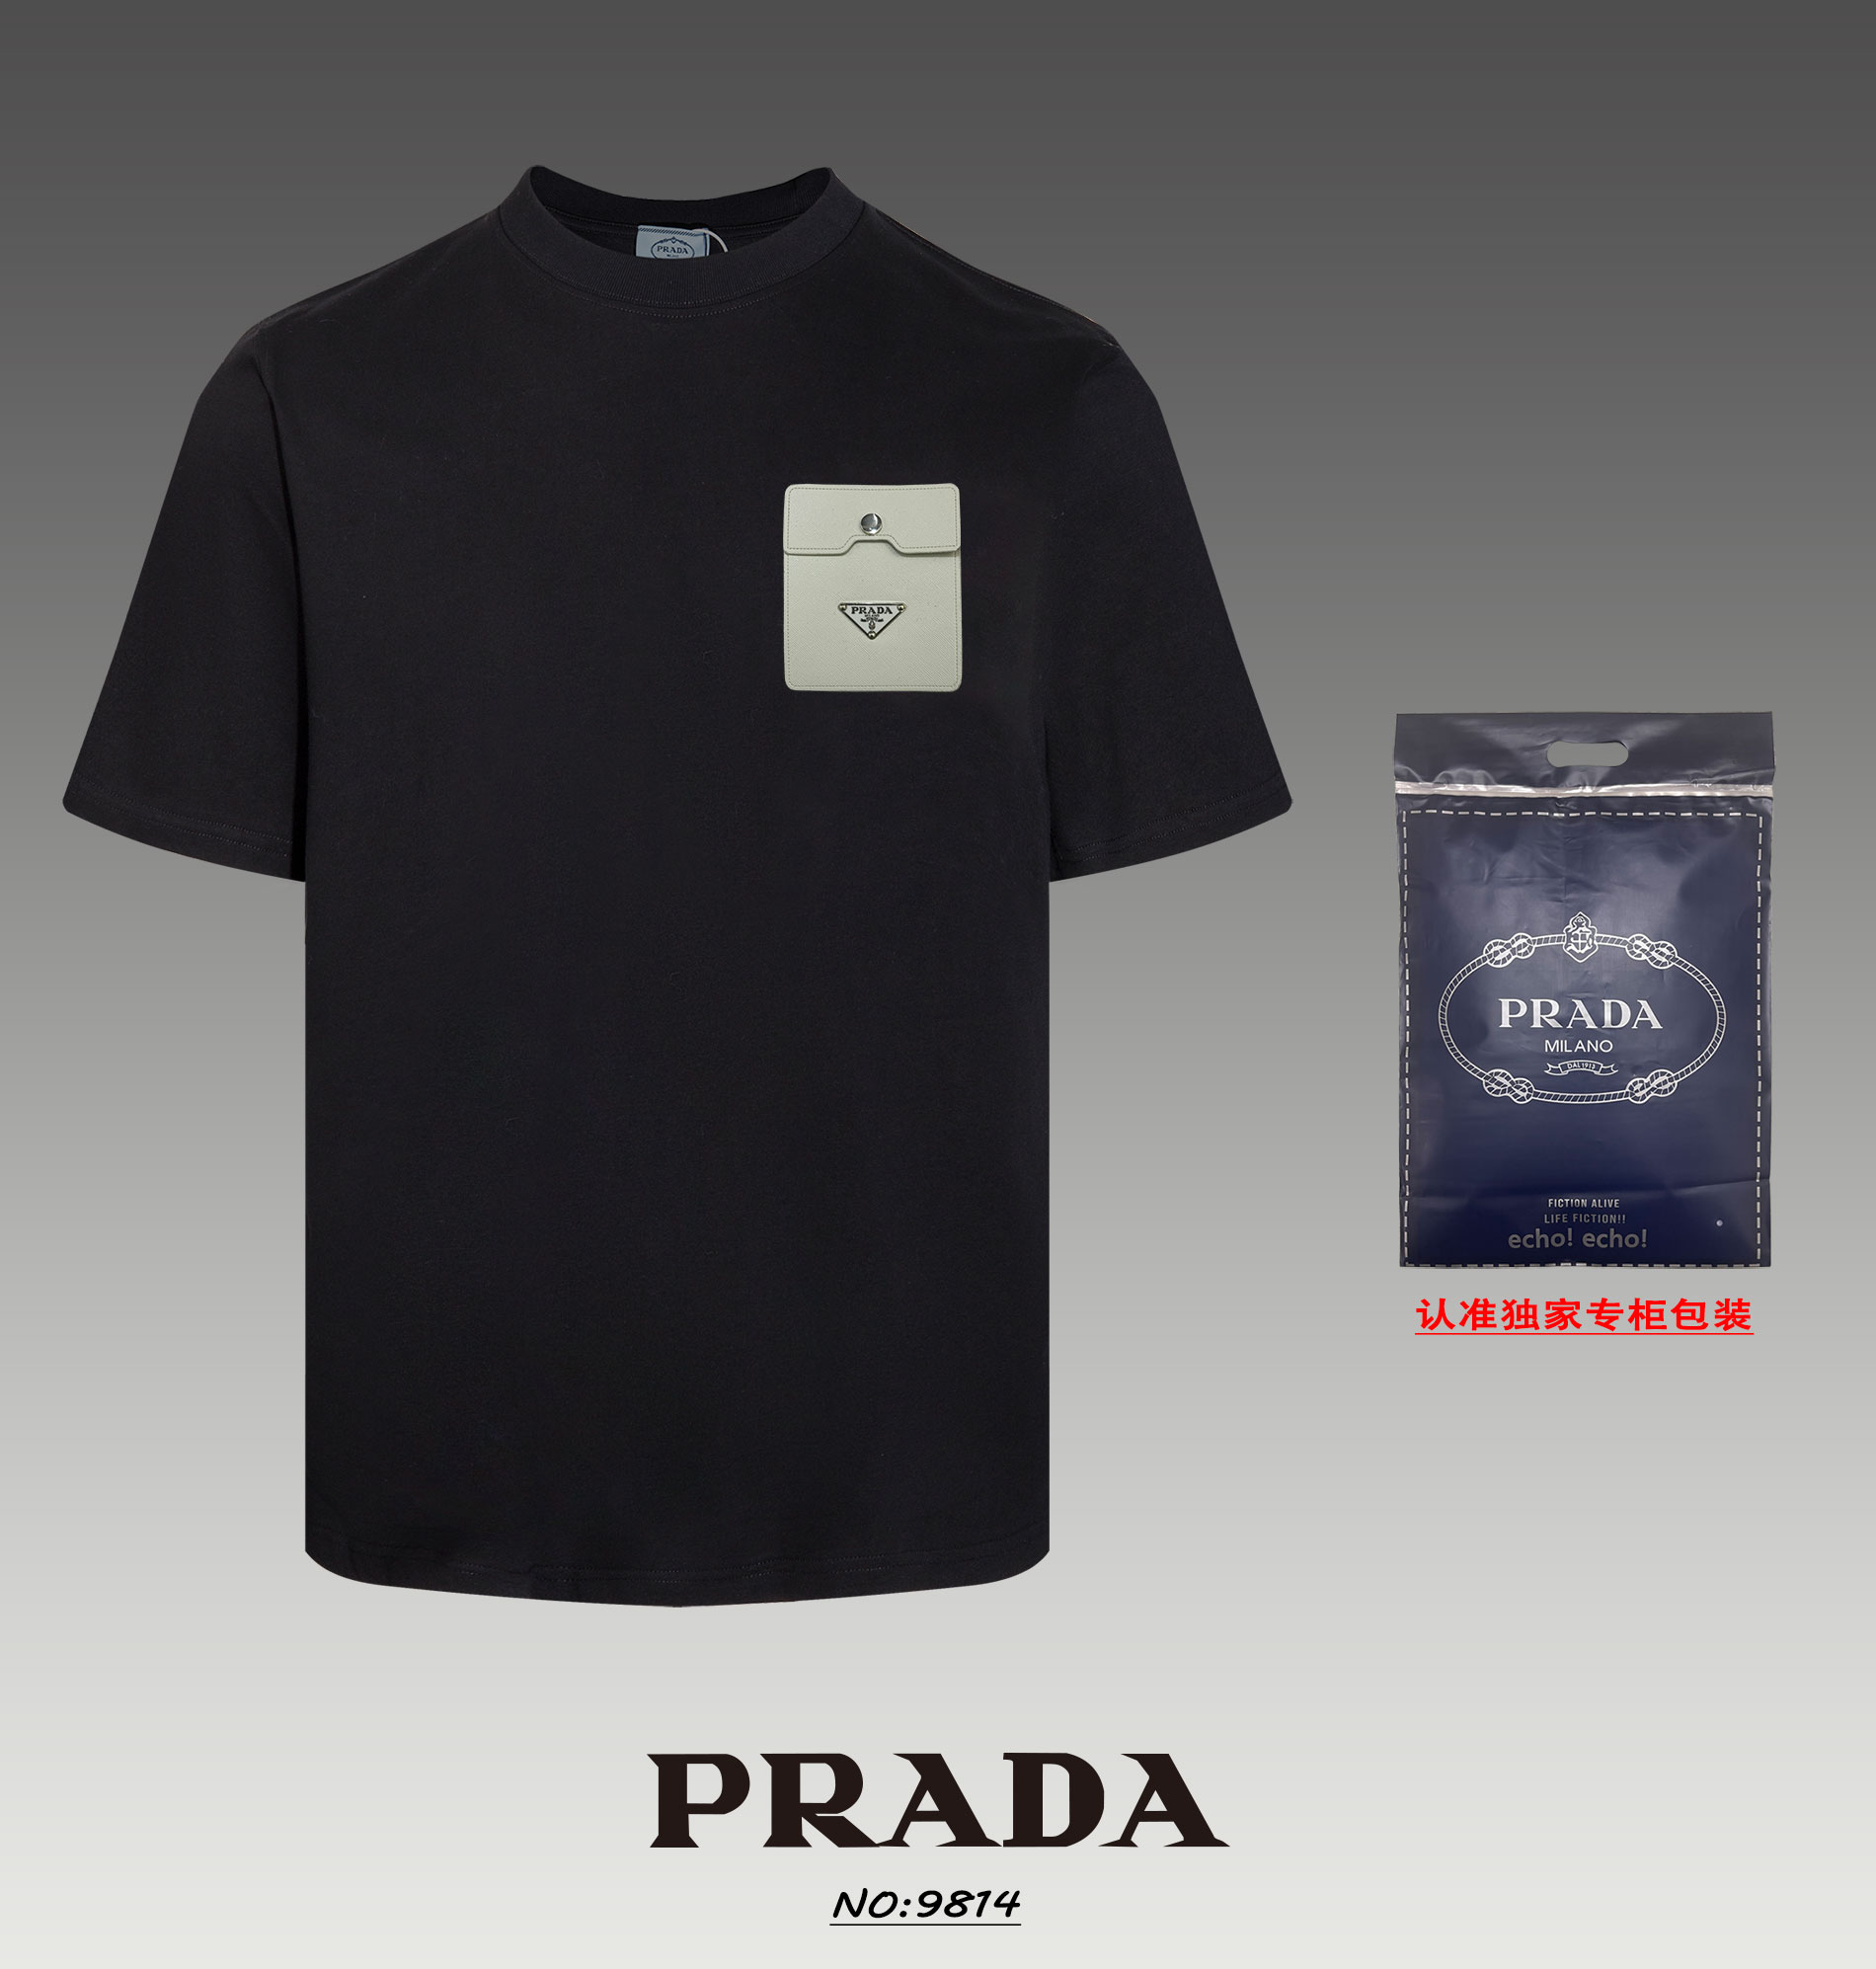 Réplique AAA de haute qualité
 Prada Vêtements T-Shirt concepteur qualité 7 étoiles
 Noir Blanc Unisexe Manches courtes